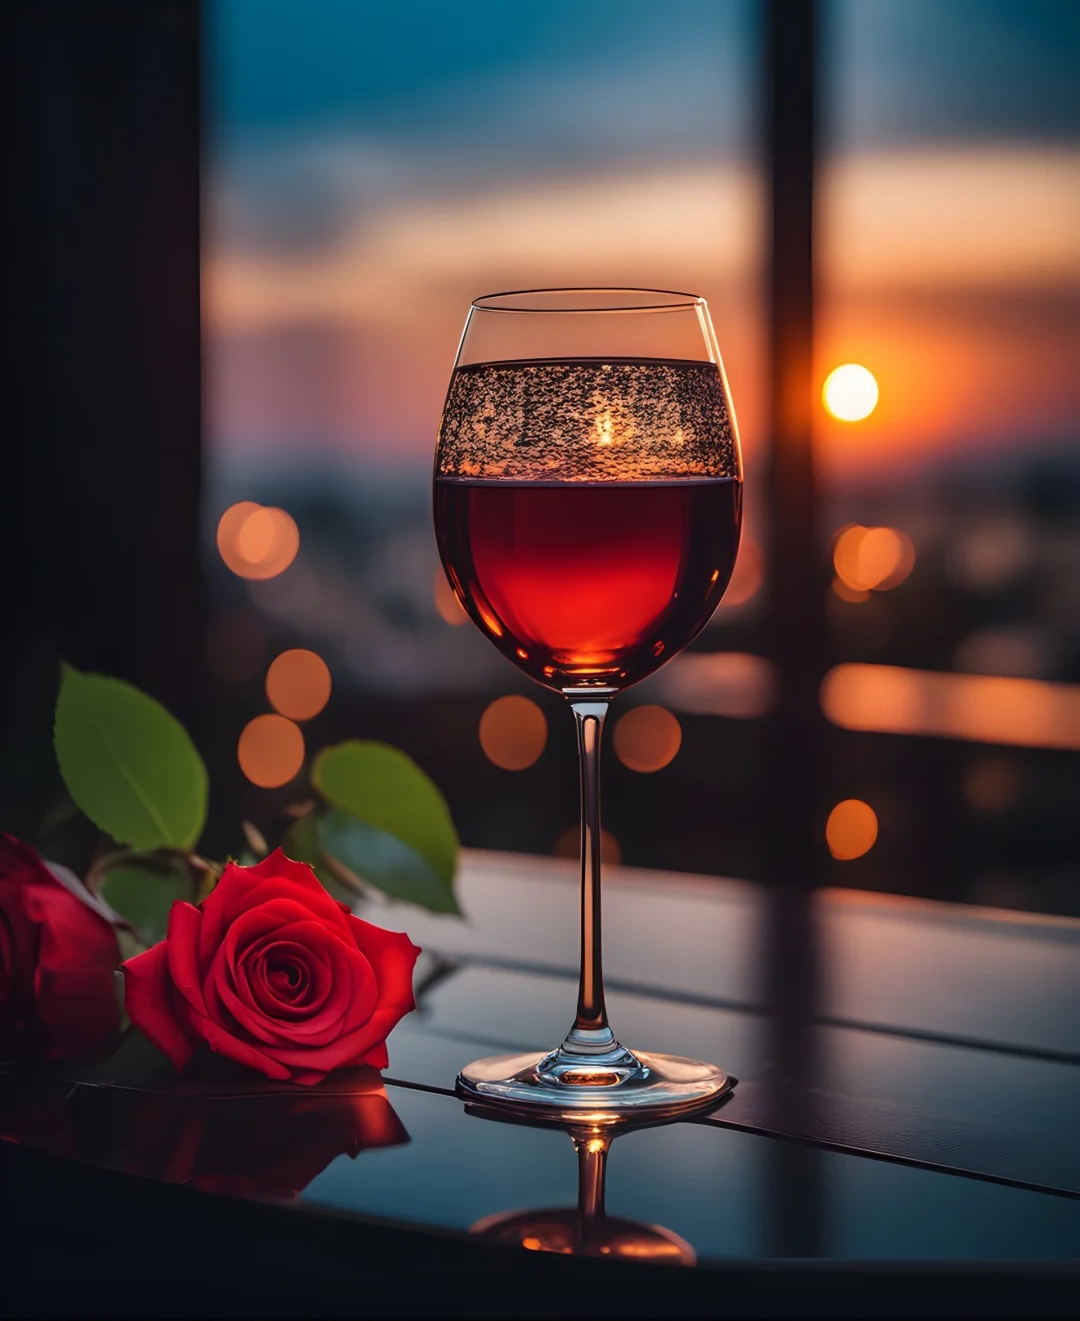 夕阳西下,一杯红酒97,一朵红玫瑰95,仿佛置身于电影中的浪漫场景